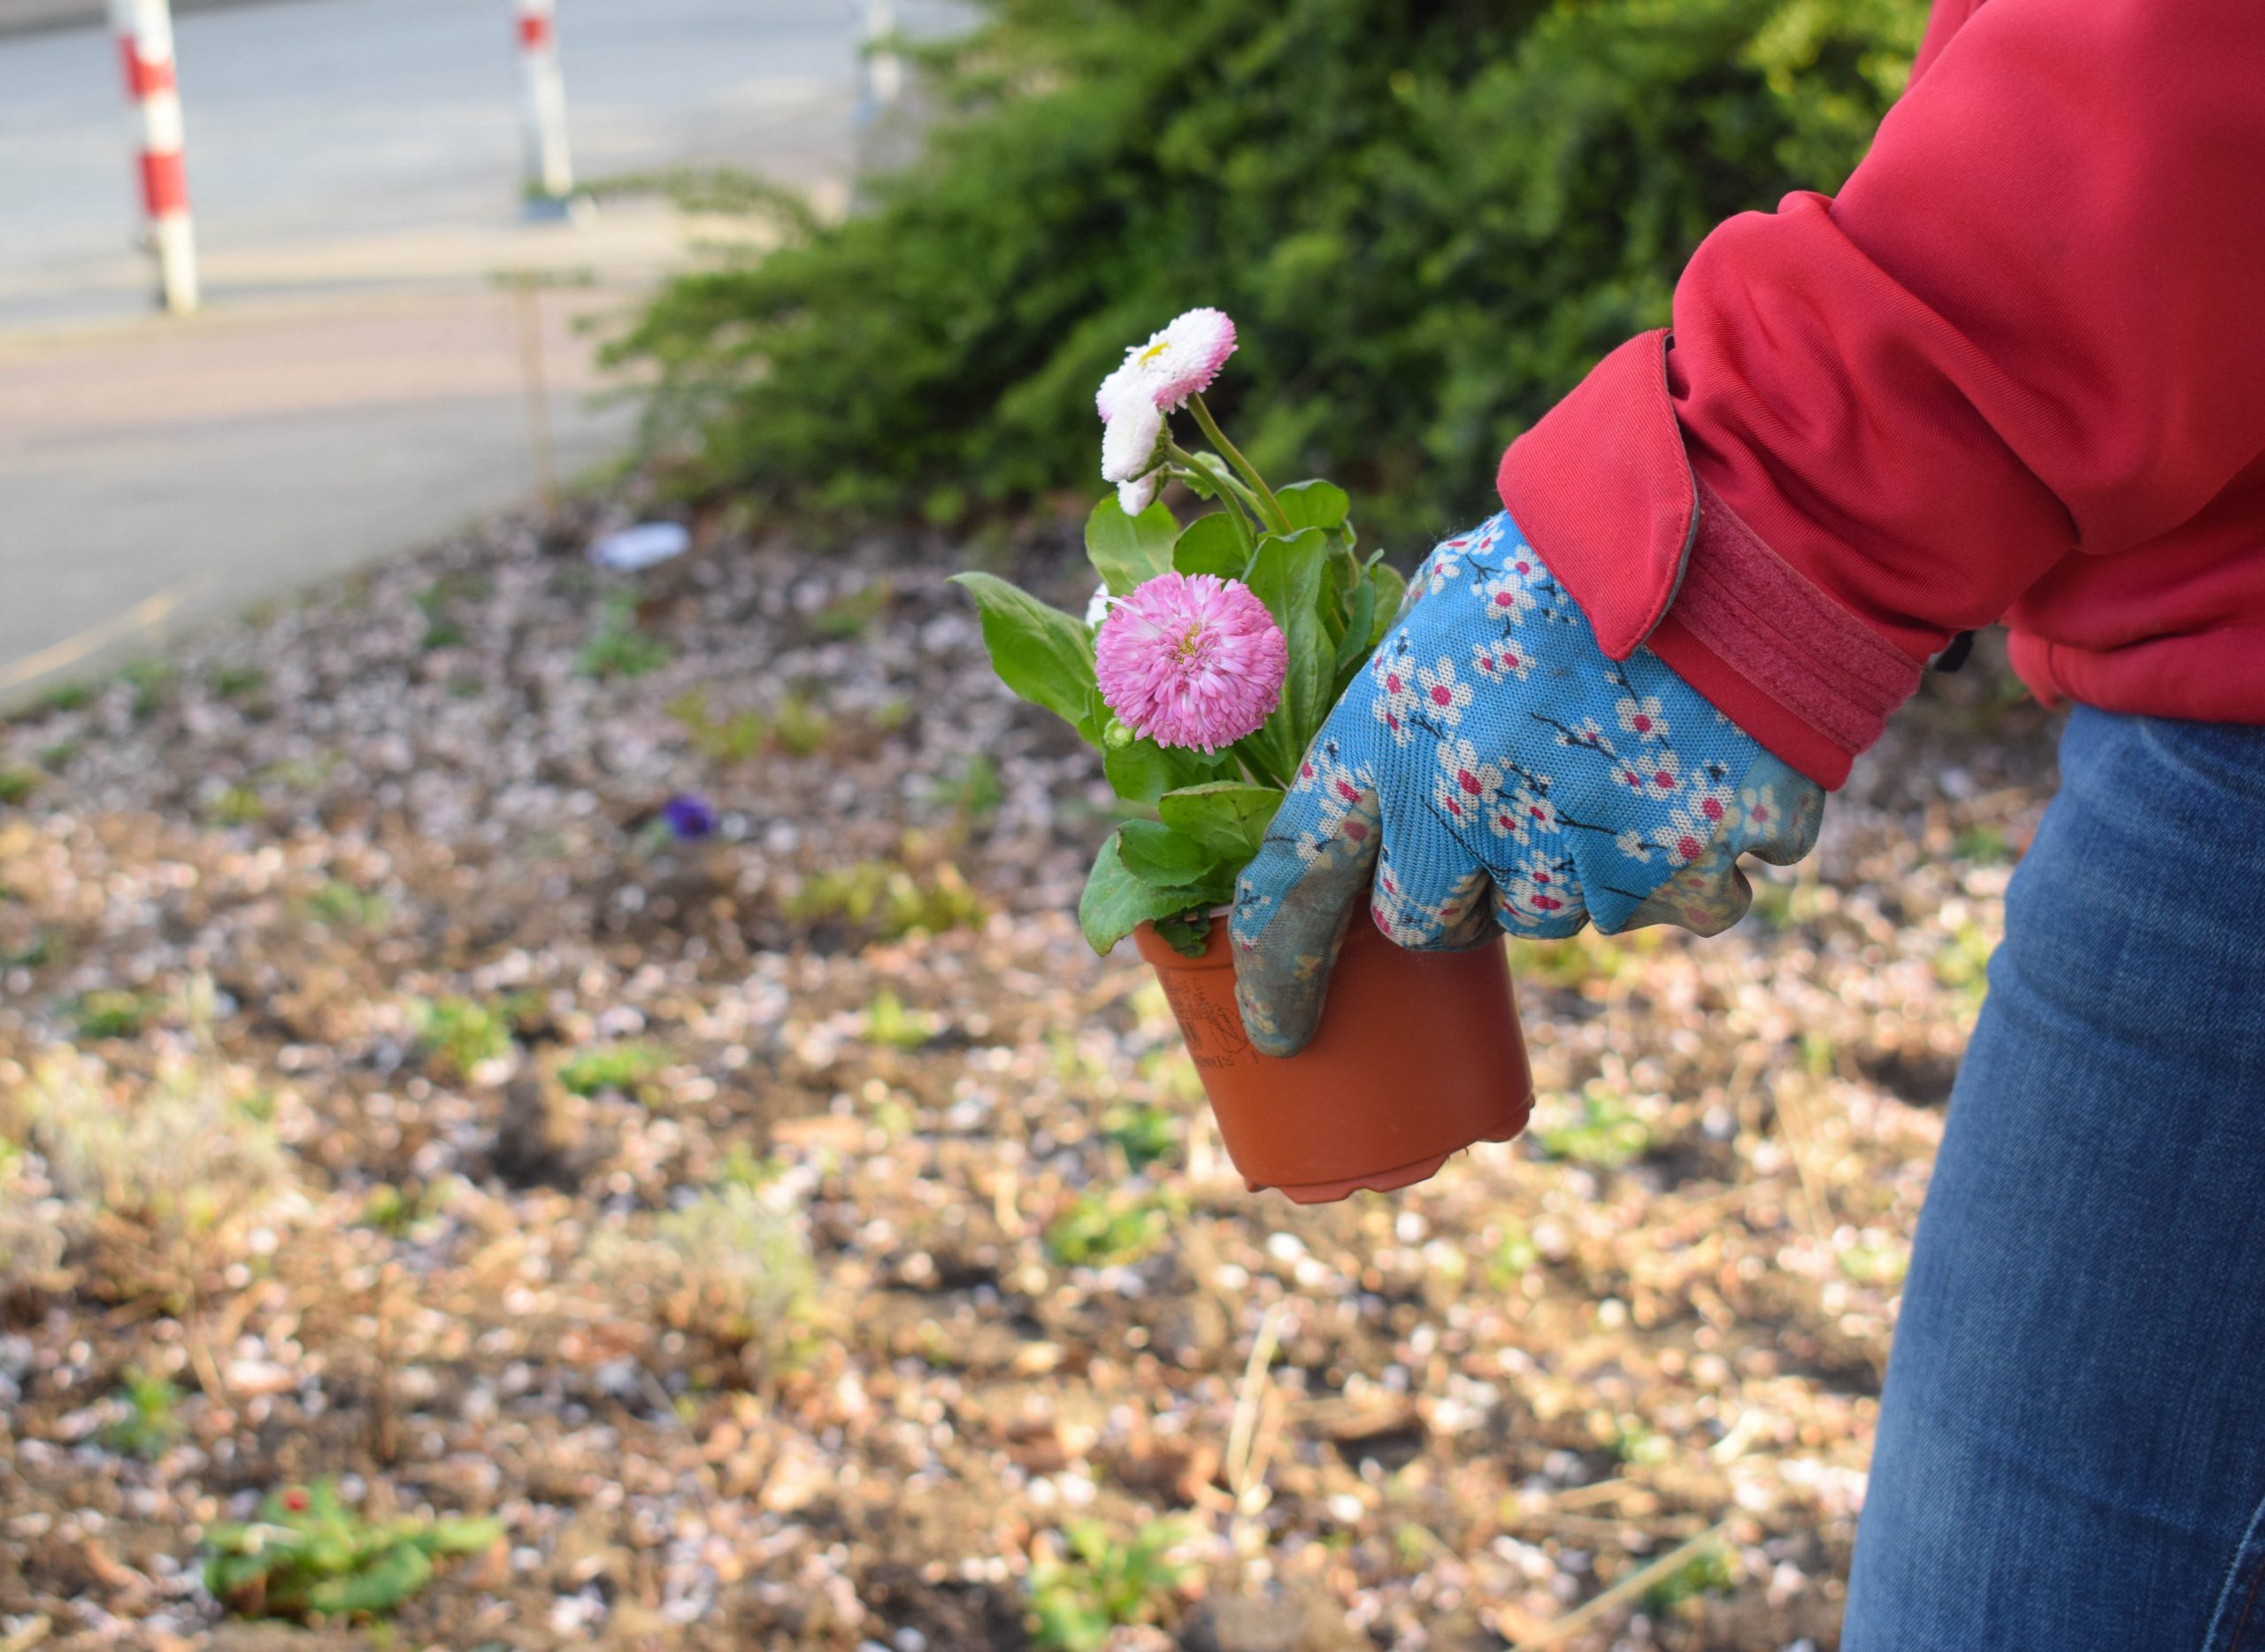 Zum Pflanzen trägt Anna blau geblümte Handschuhe. Normalerweise gärtnert sie ohne, aber an der Verkehrsinsel ist ihr dafür die Erde zu verschmutzt. 